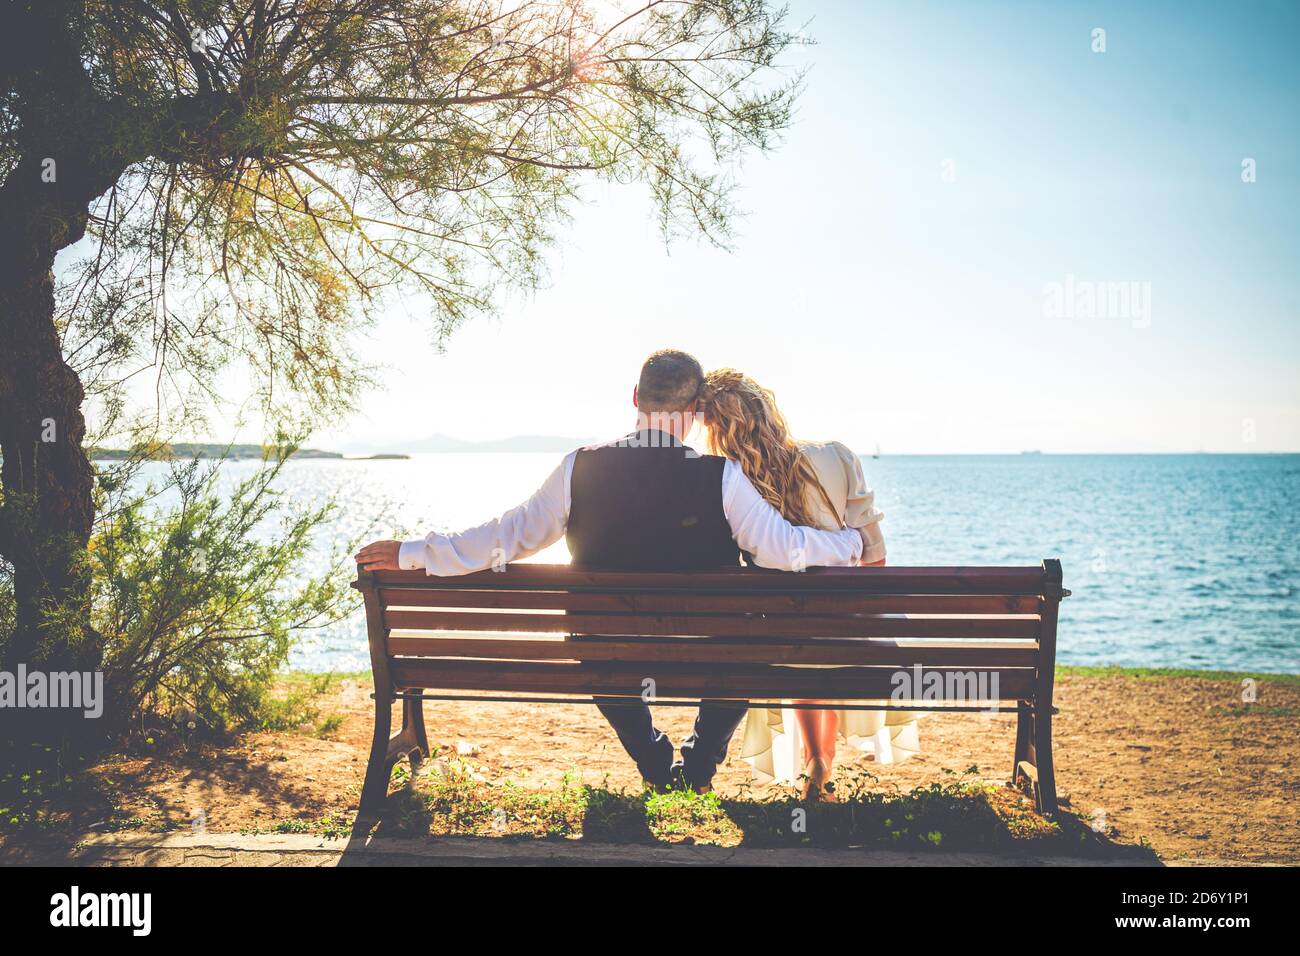 Eine Braut Und Ein Bräutigam Sitzen Holzbank Am Strand Rückansicht Stockfotografie Alamy 